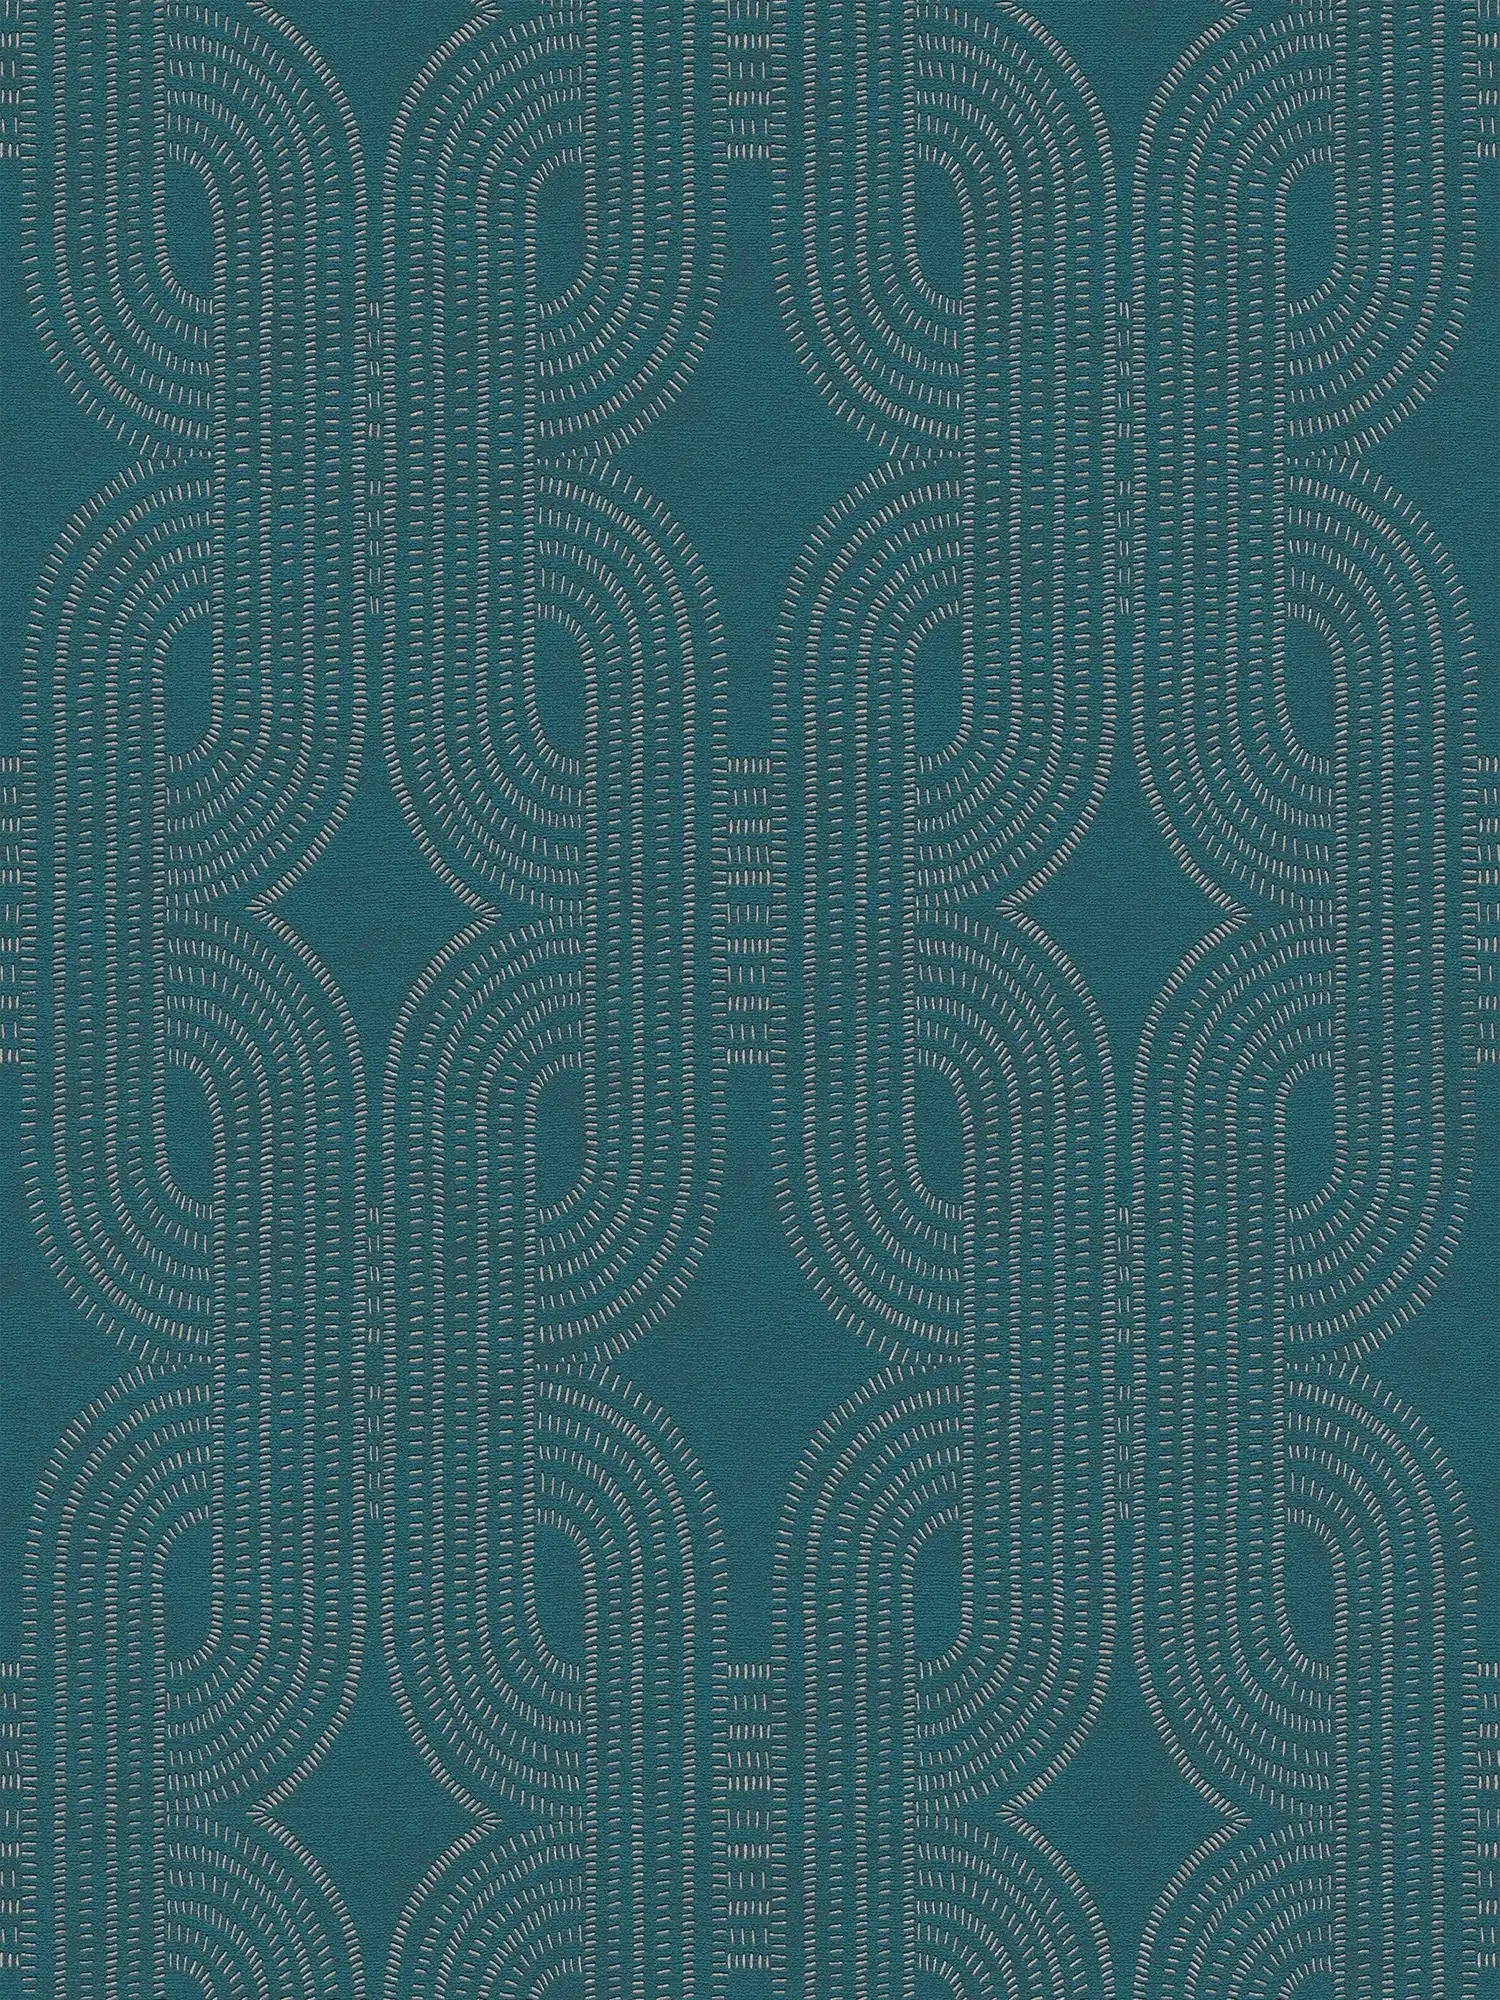 Vliesbehang met abstract grafisch retro patroon - blauw, groen, beige
